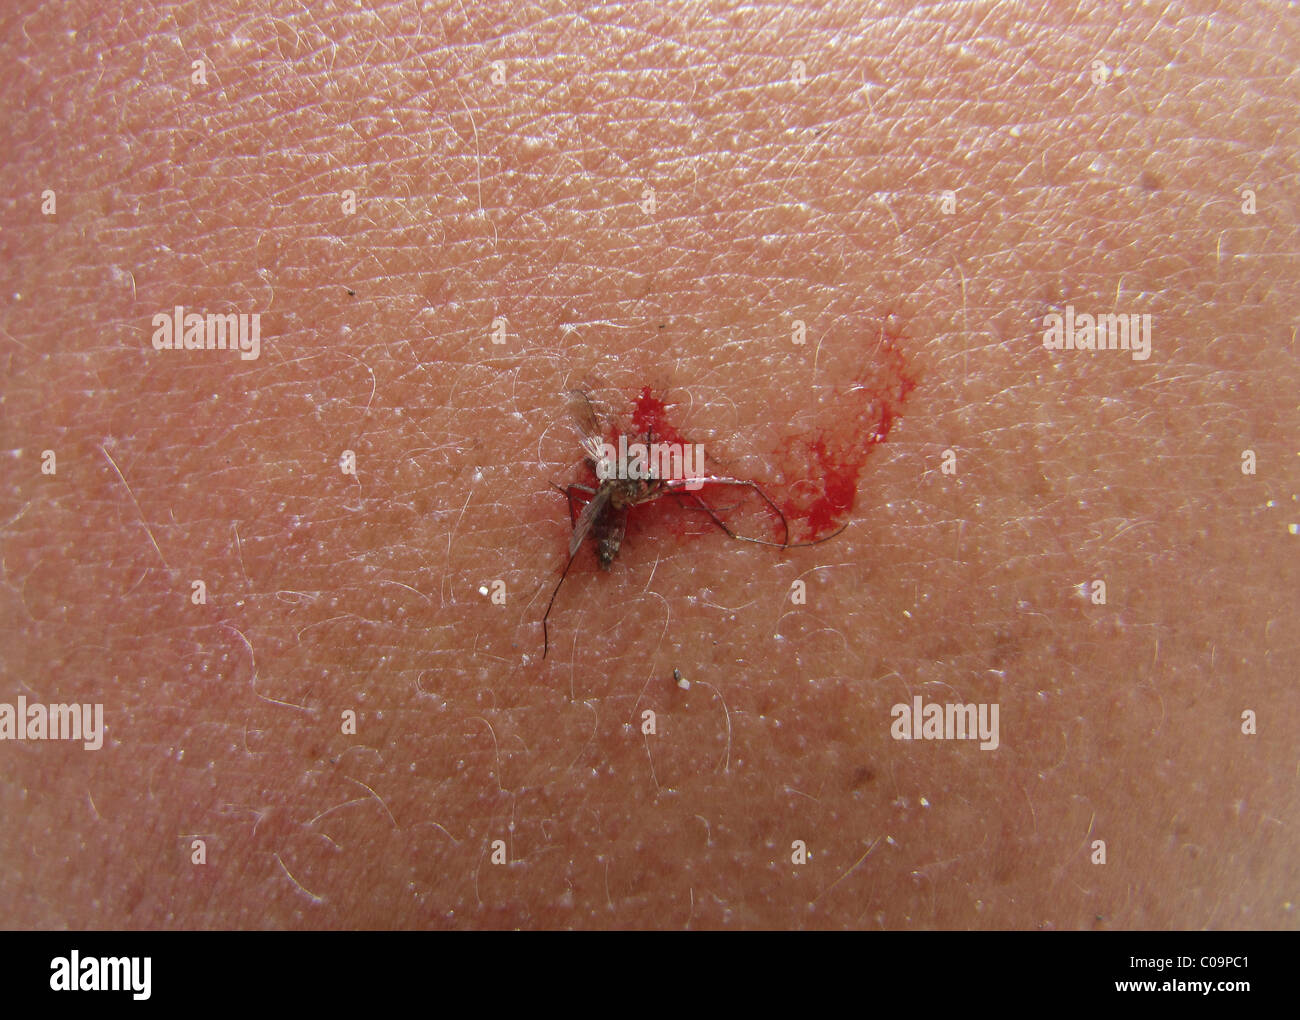 Zanzara morta (Culicidae) schiacciati sulla pelle umana Foto Stock